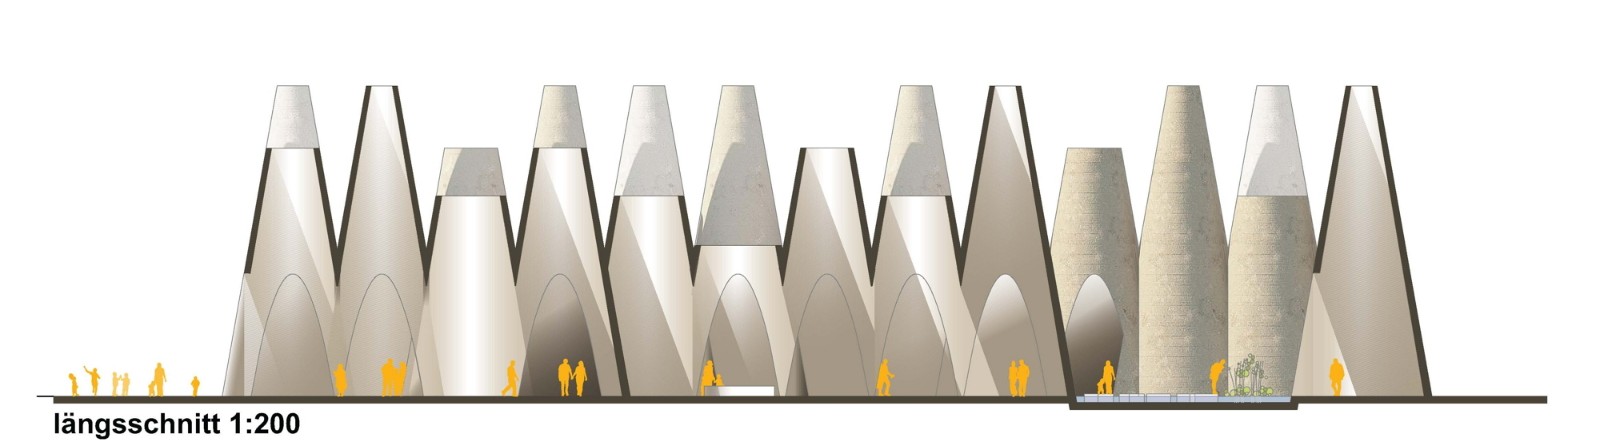 巴吉风塔锥形展馆|迪拜世博会奥地利馆设计竞赛第一名获奖作品_810.jpeg